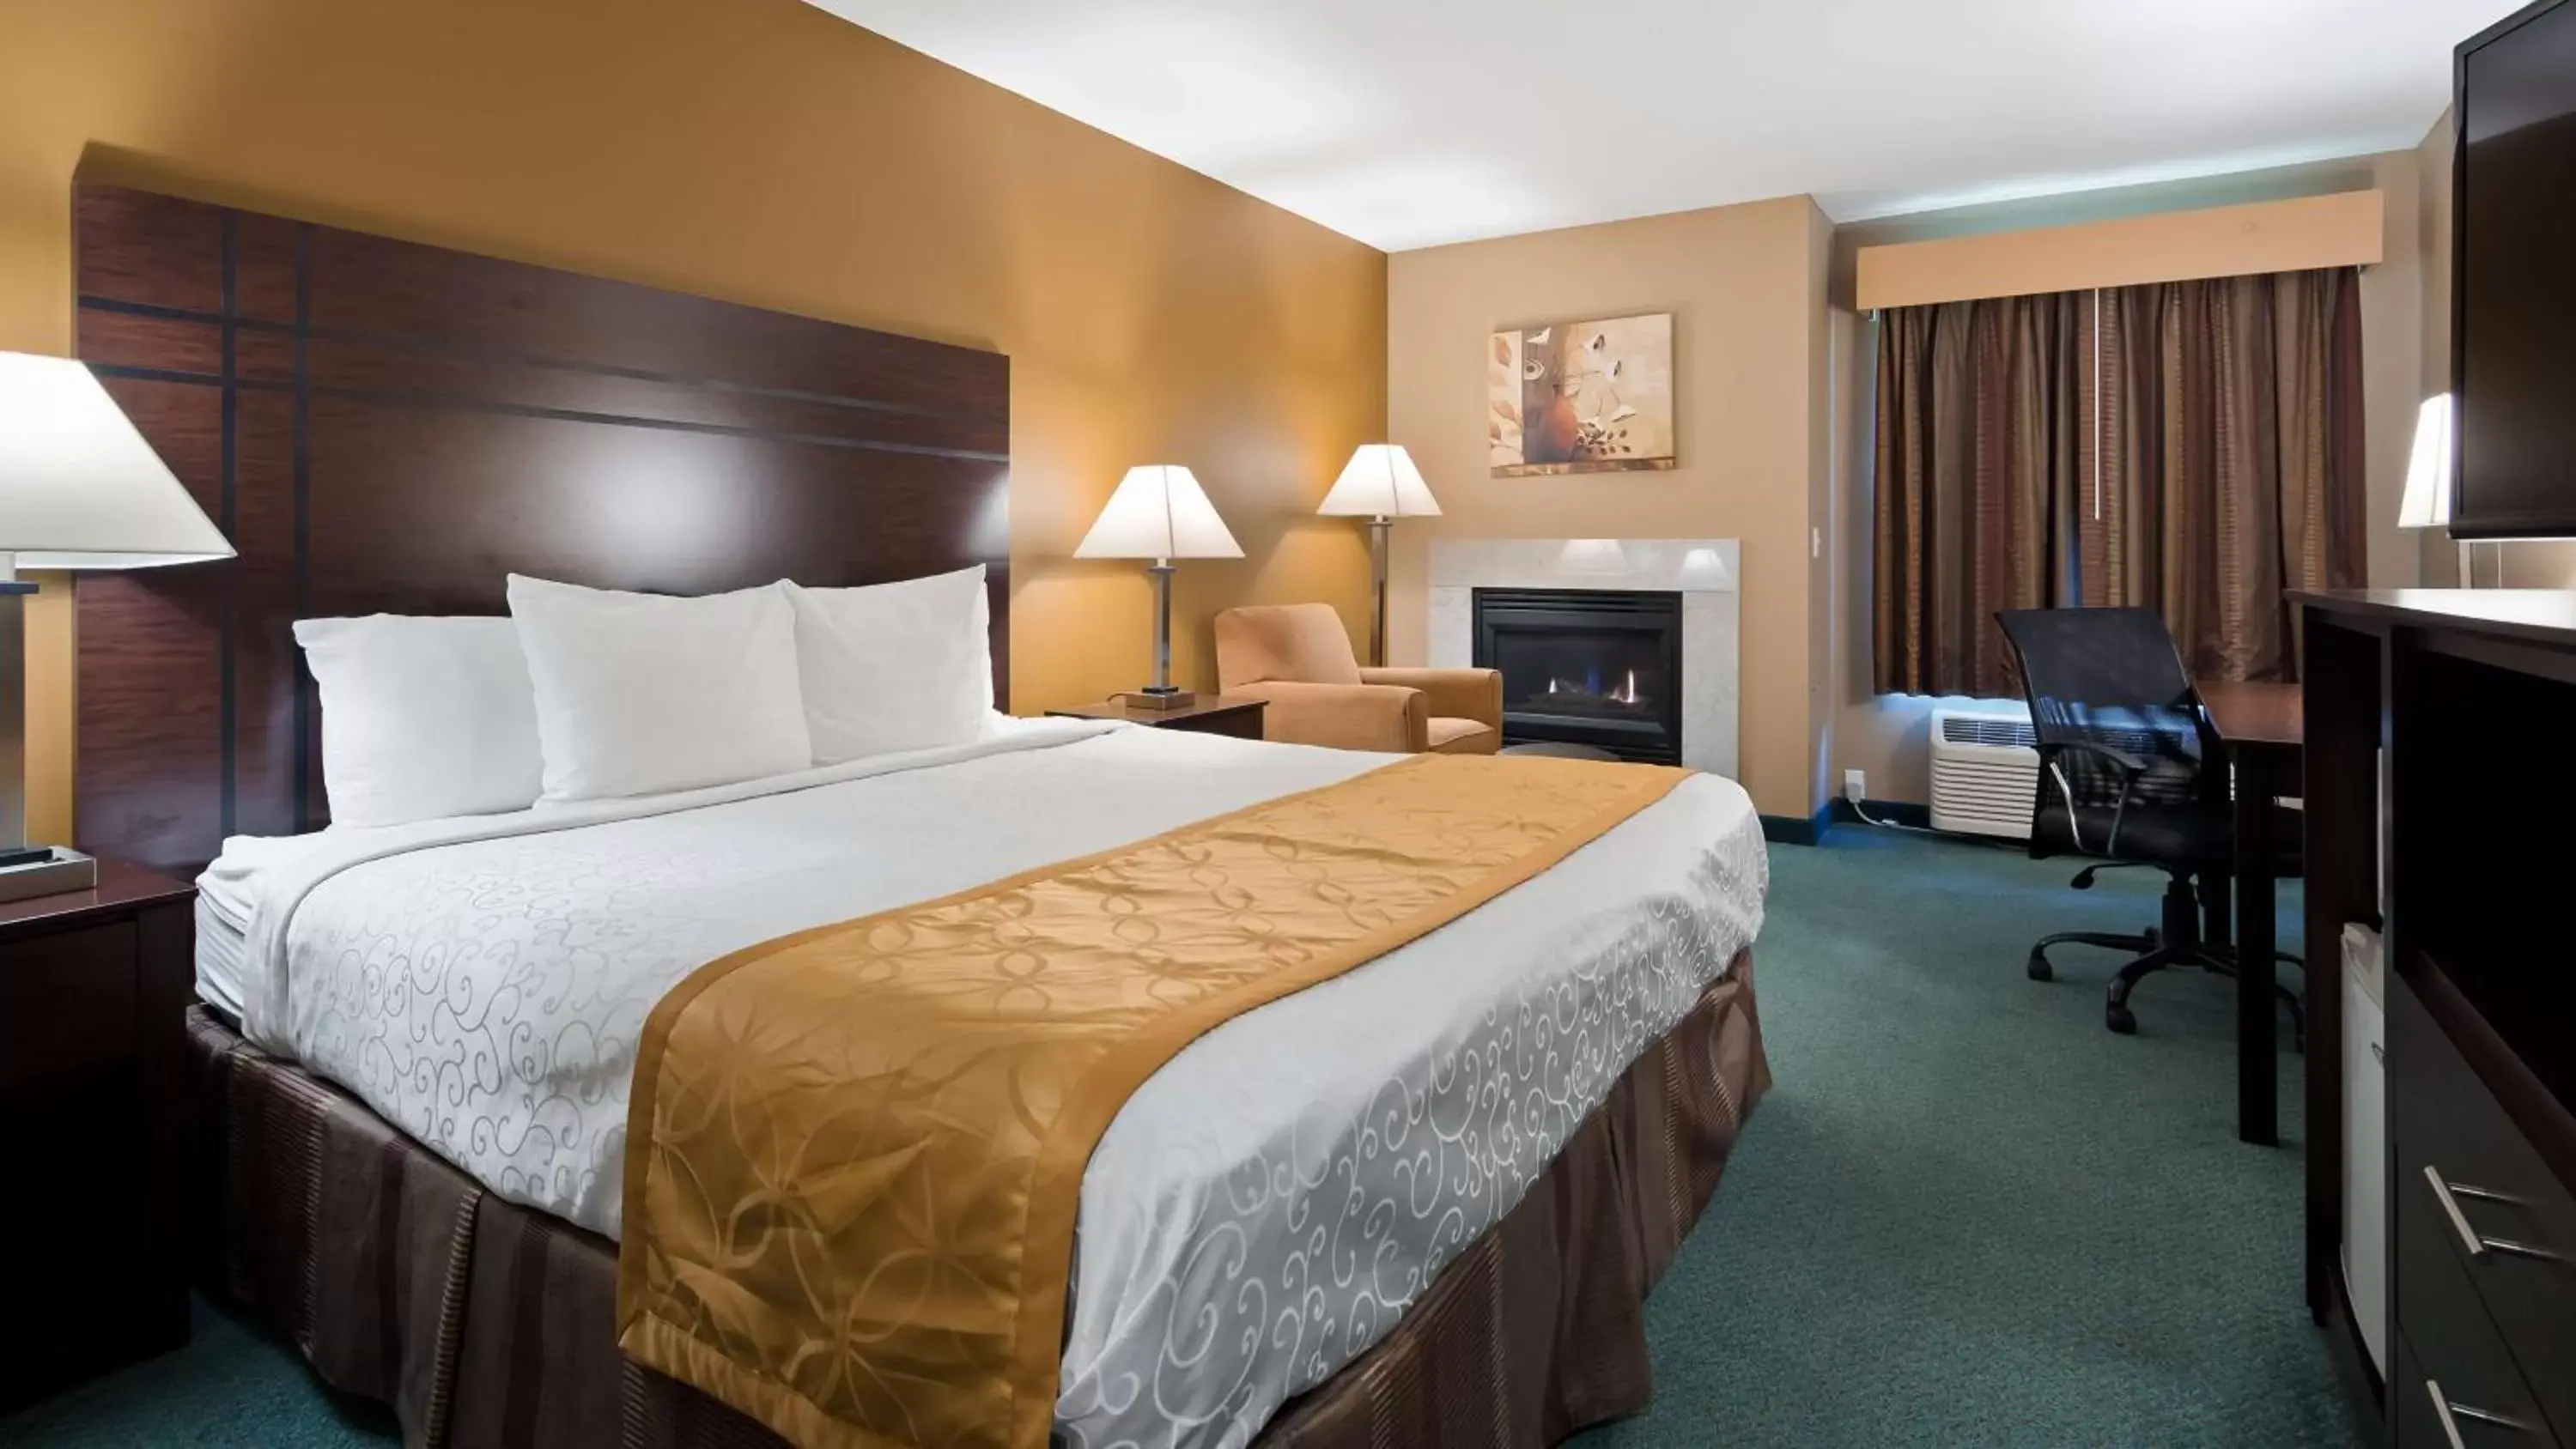 Bedroom, Bed in Best Western Plaza Hotel Saugatuck